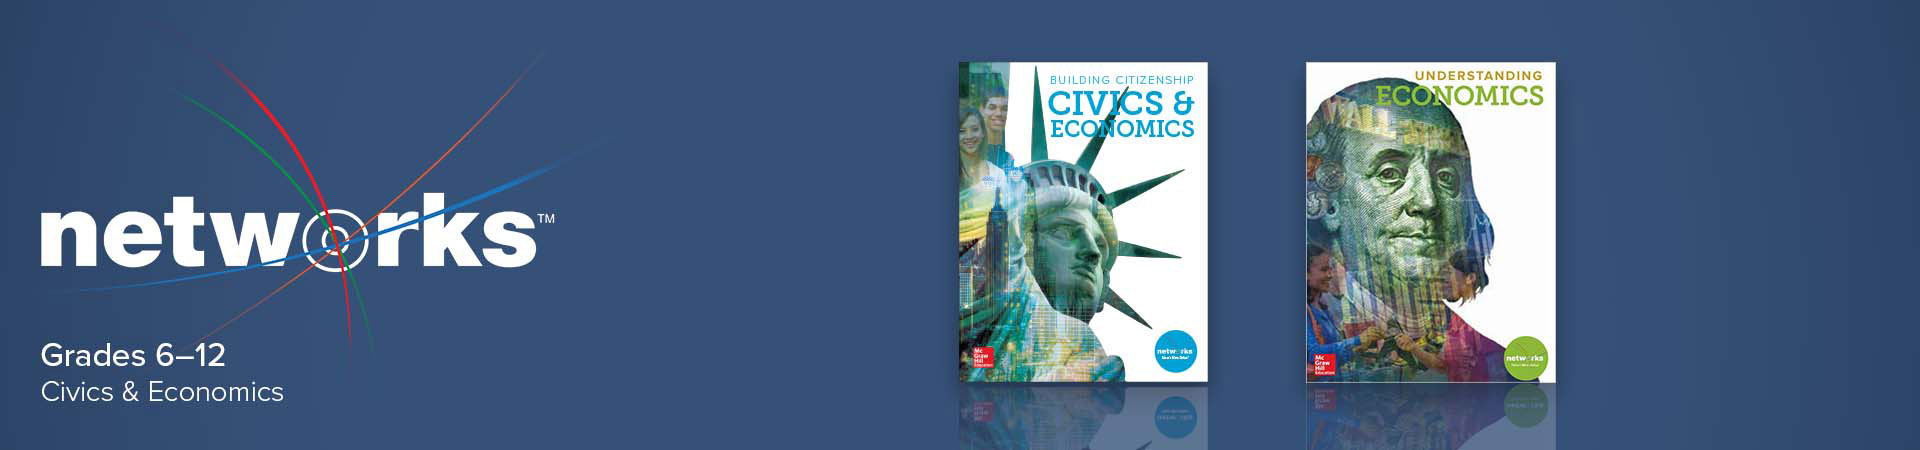 Networks Grades 6-12 Civics and Economics